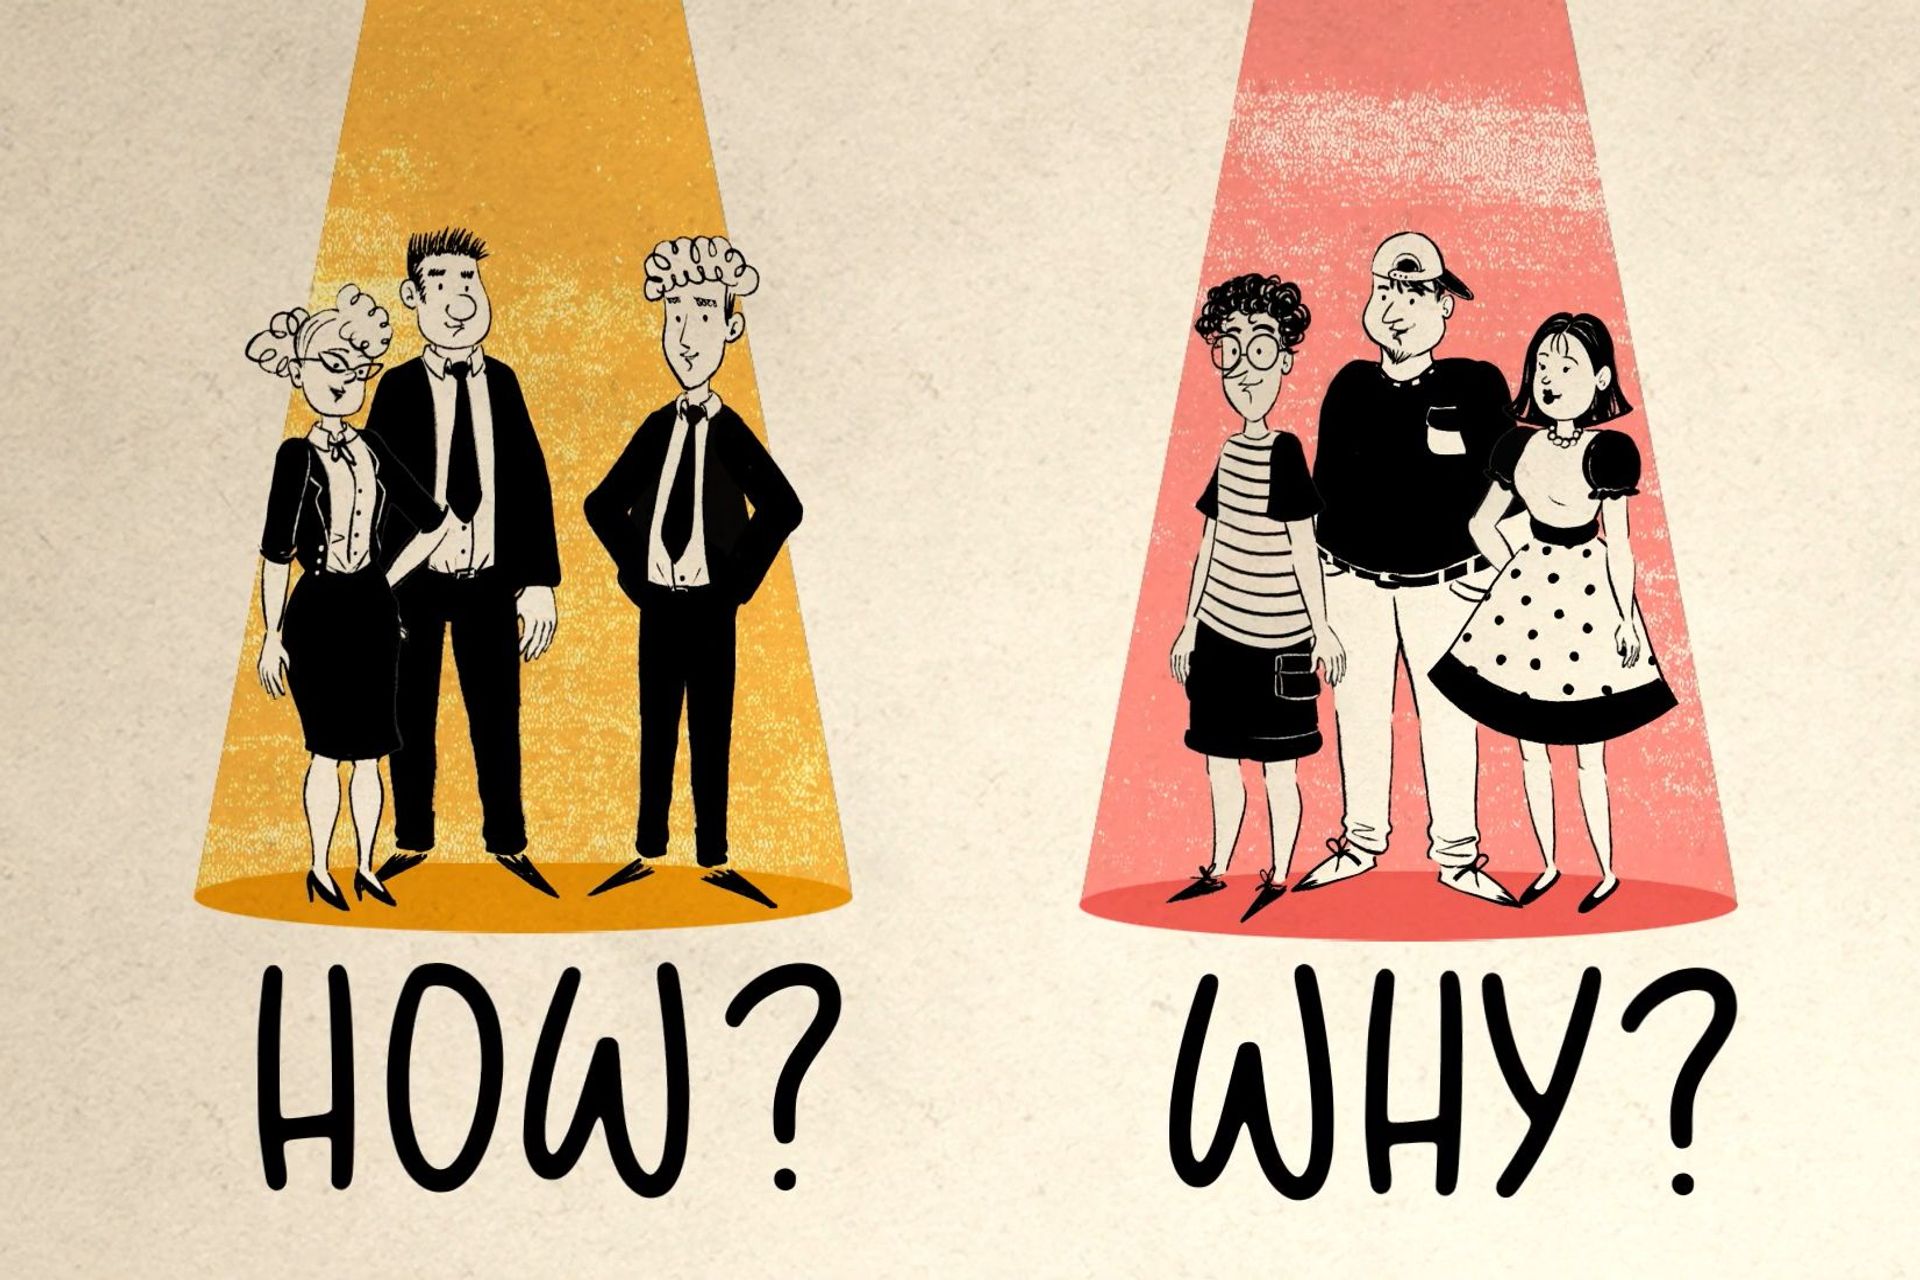 Dilema između "Kako" i "Zašto" na engleskom u odnosu na dva različita tipa publike